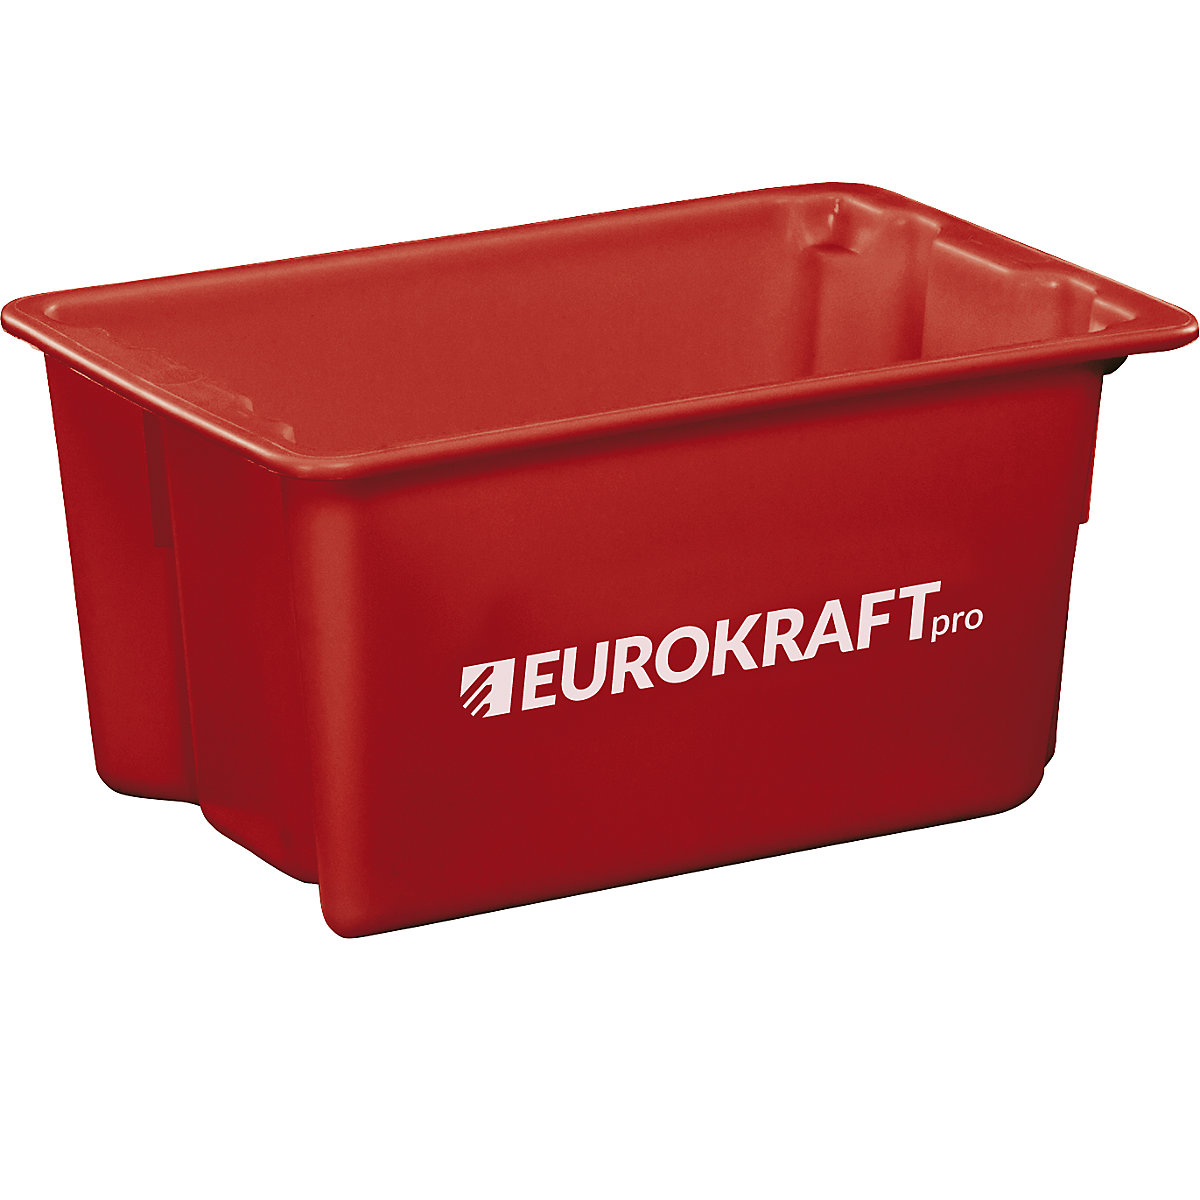 Recipiente empilhável giratório em polipropileno próprio para alimentos - eurokraft pro